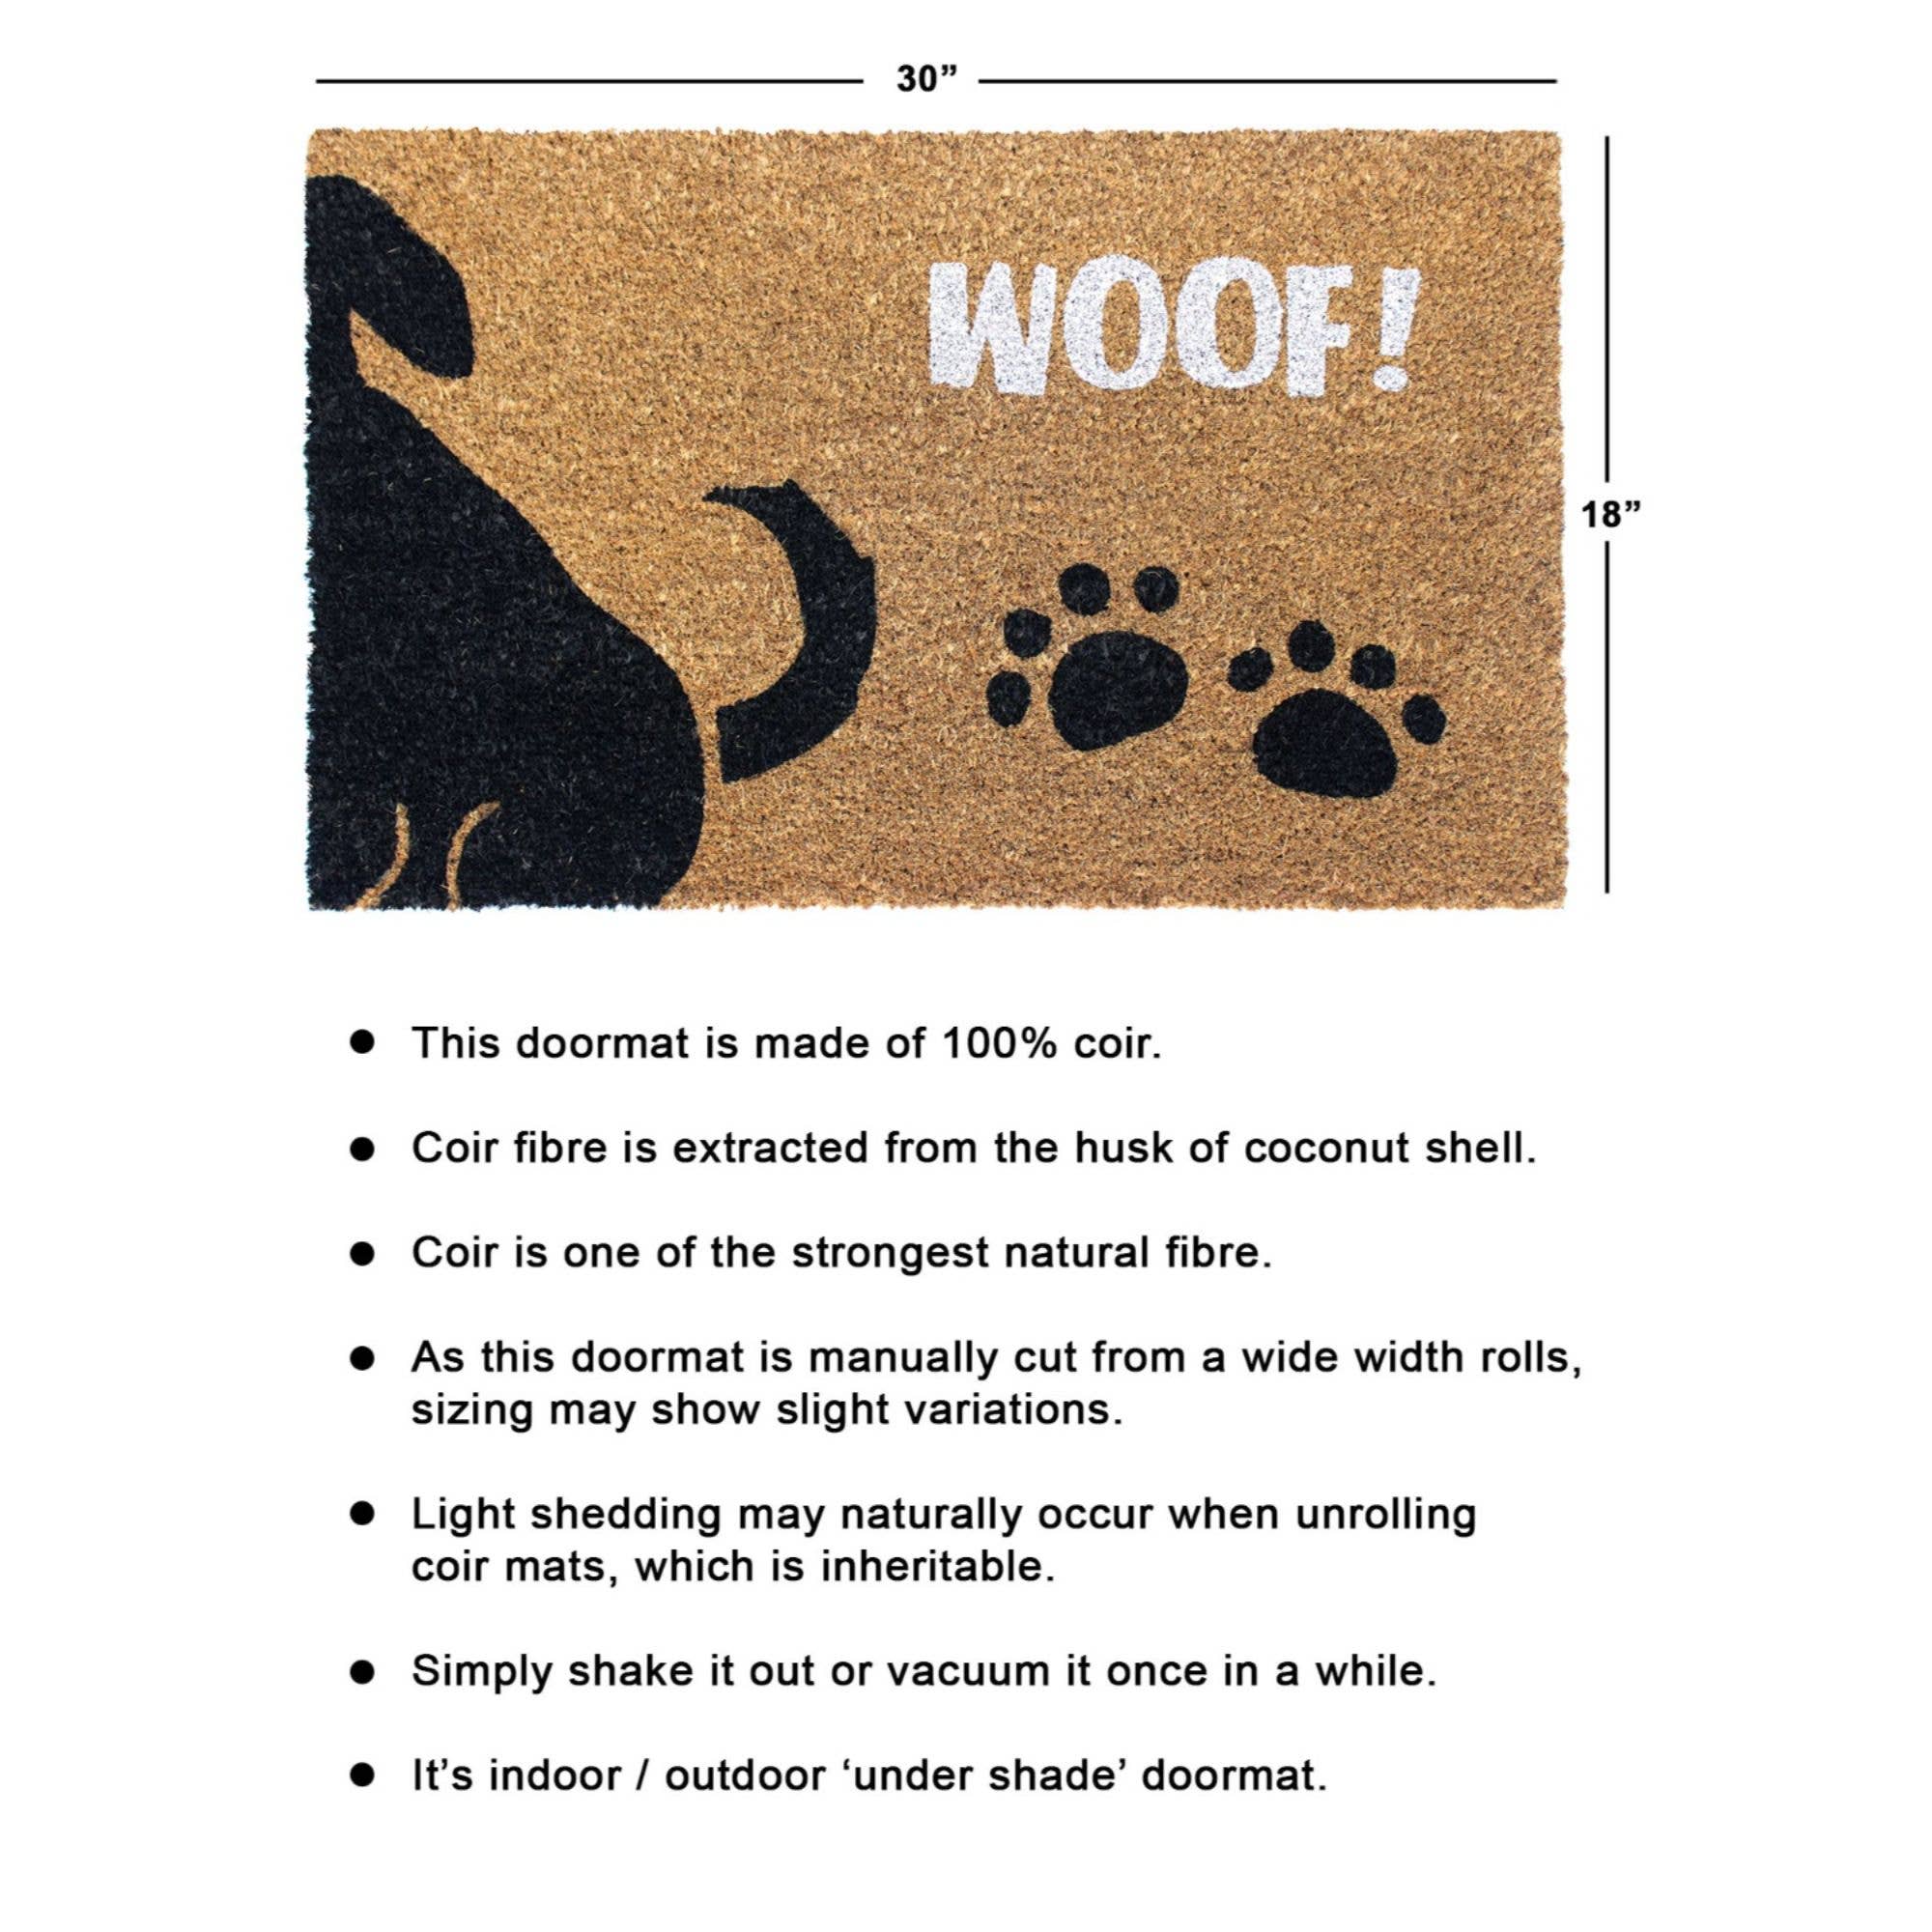 Doormat - White Machine Tufted Woof Doormat, 18" x 30" Rug